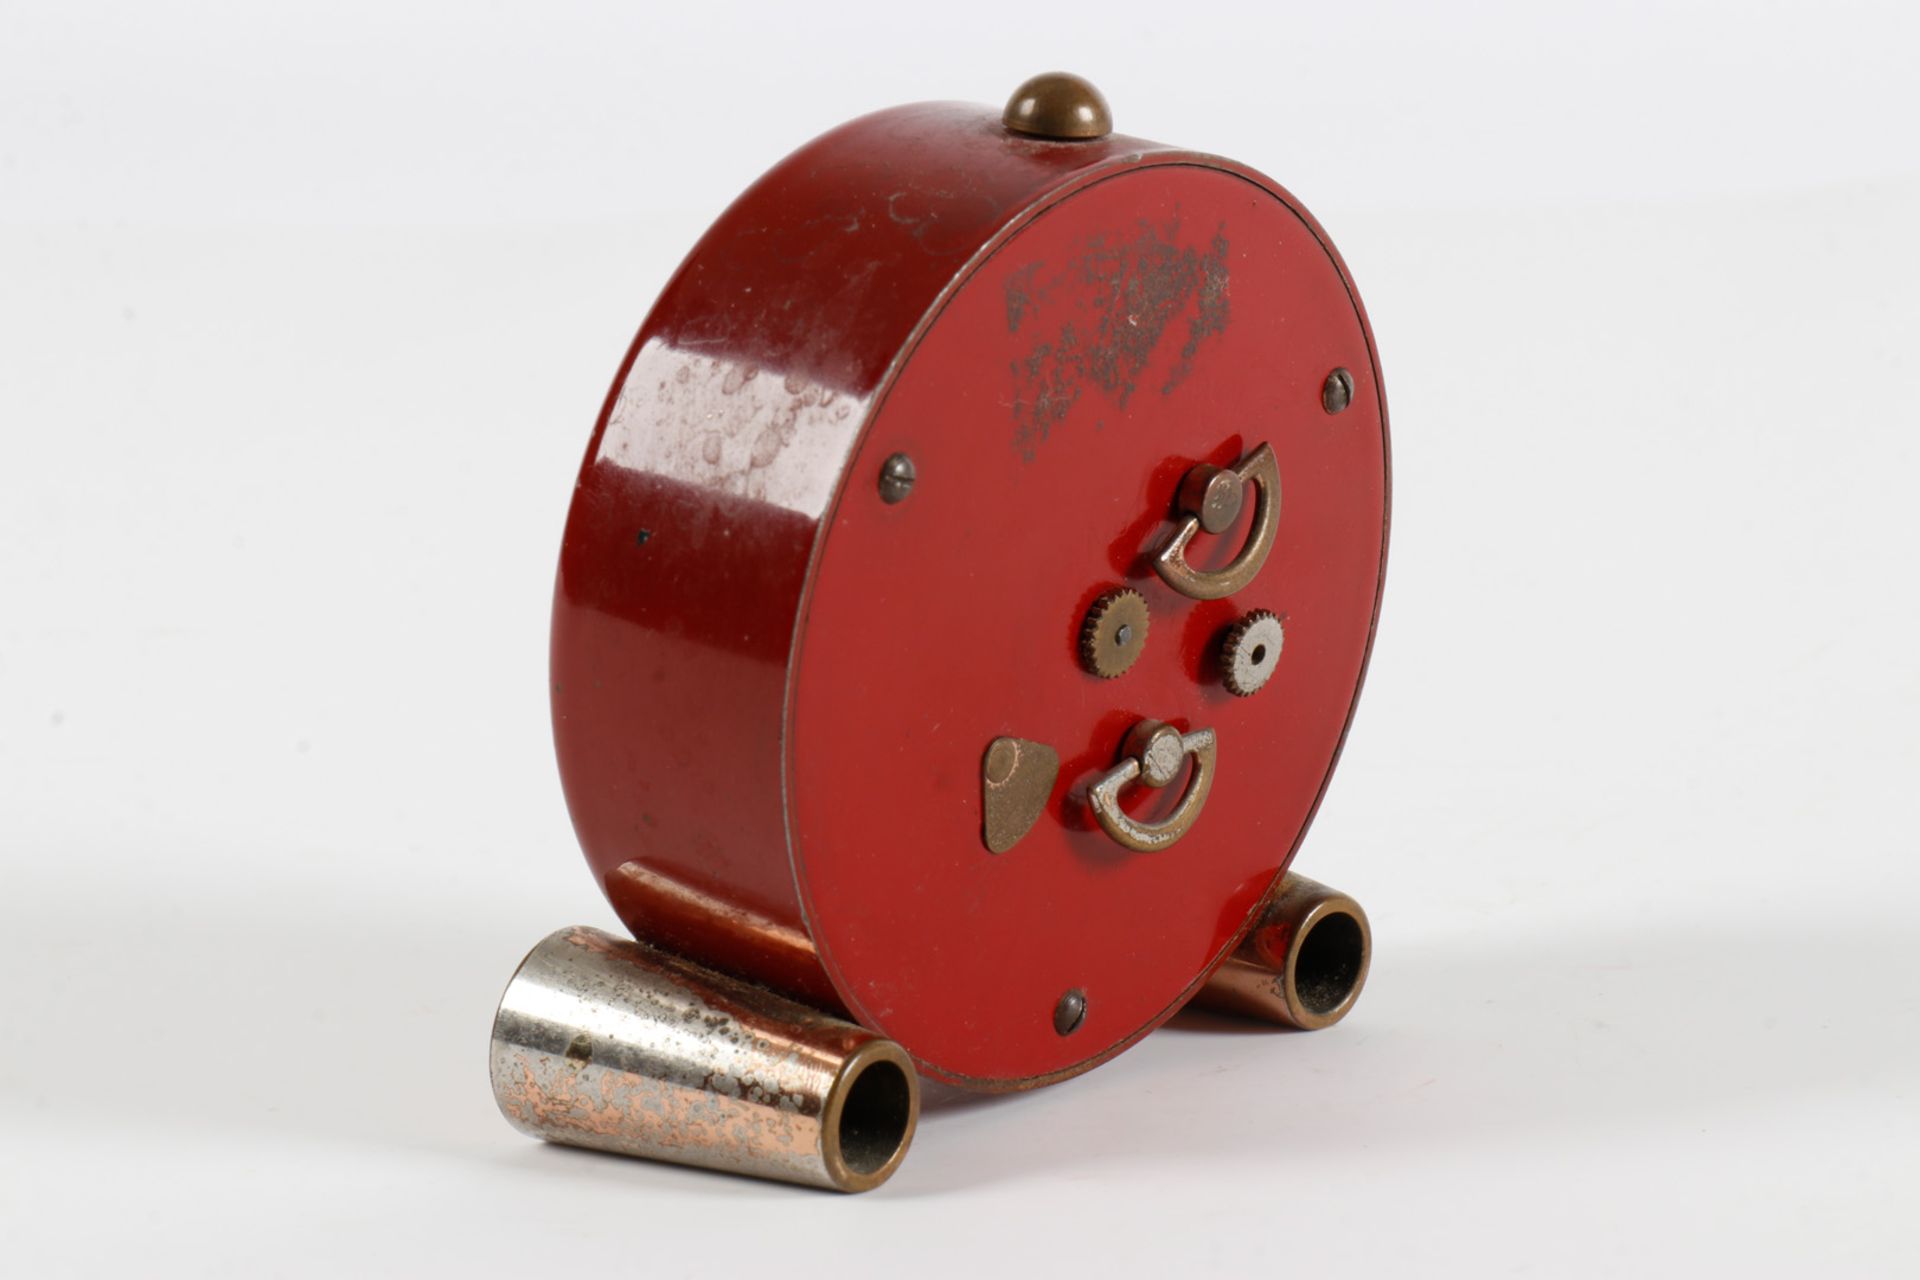 Kleiner Jaeger Reisewecker mit Leuchtzeiger und Leuchtziffern, rotes Metallgehäuse, Handaufzug - Image 2 of 2